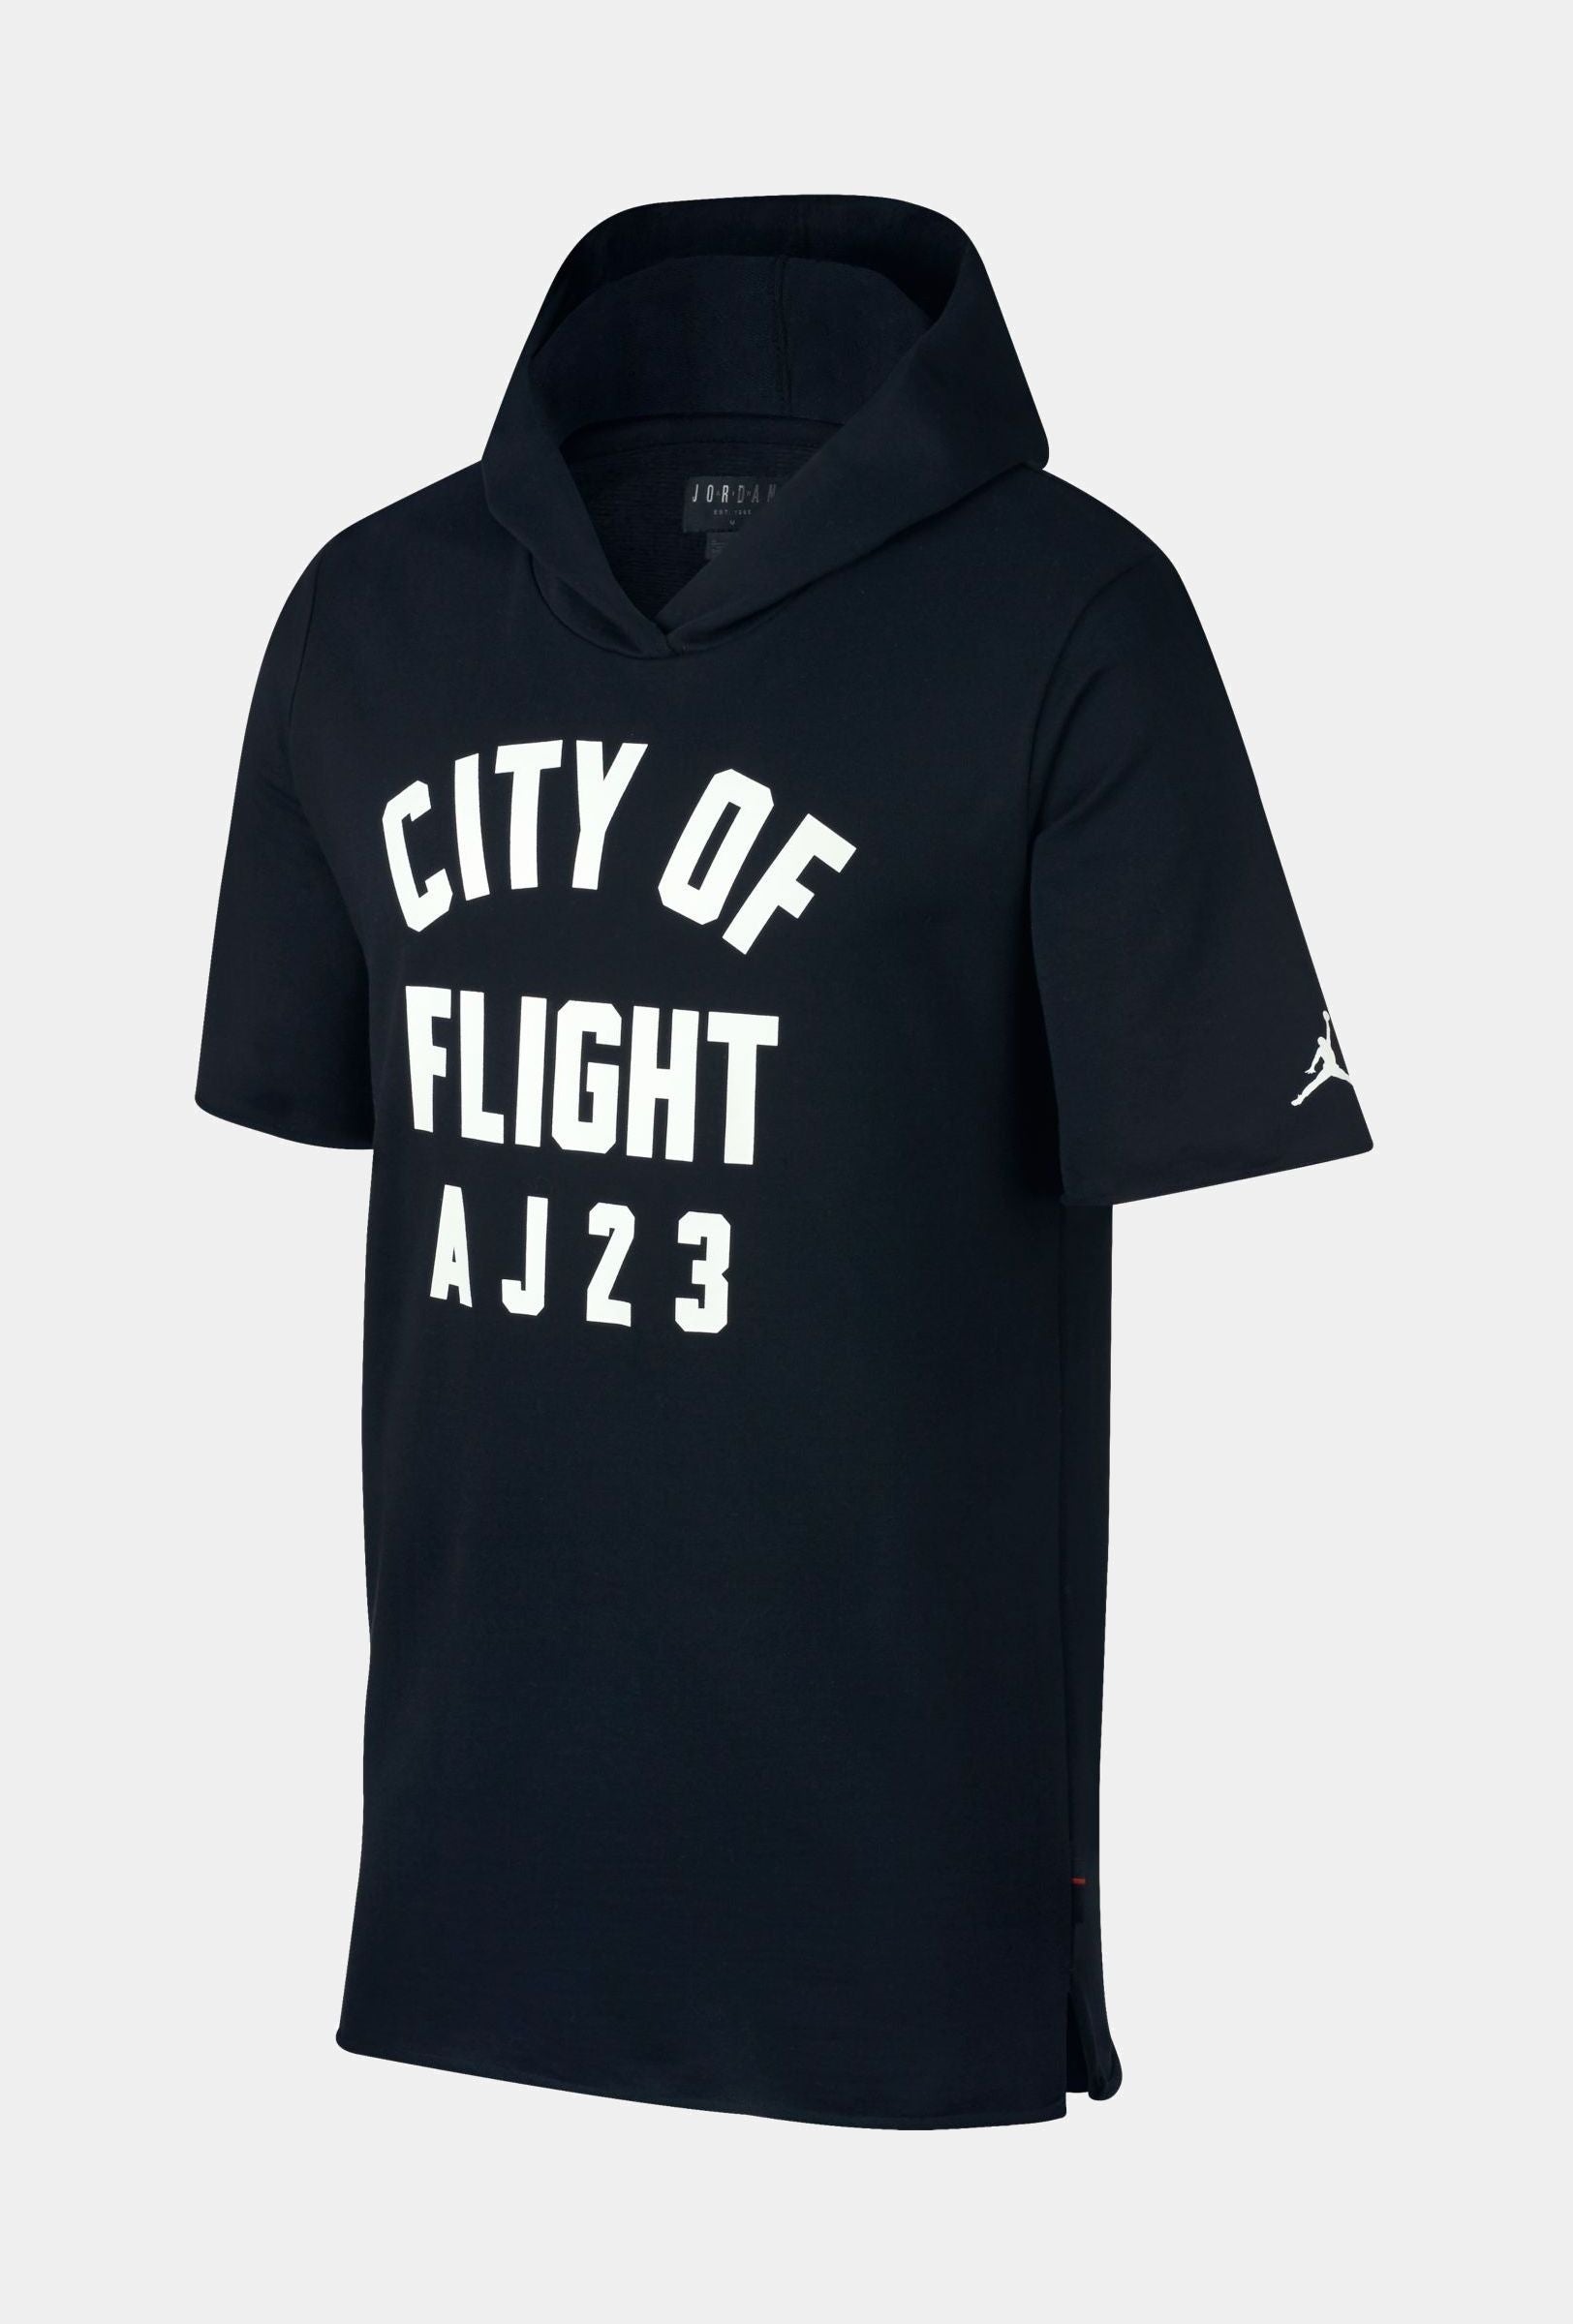 jordan city of flight hoodie